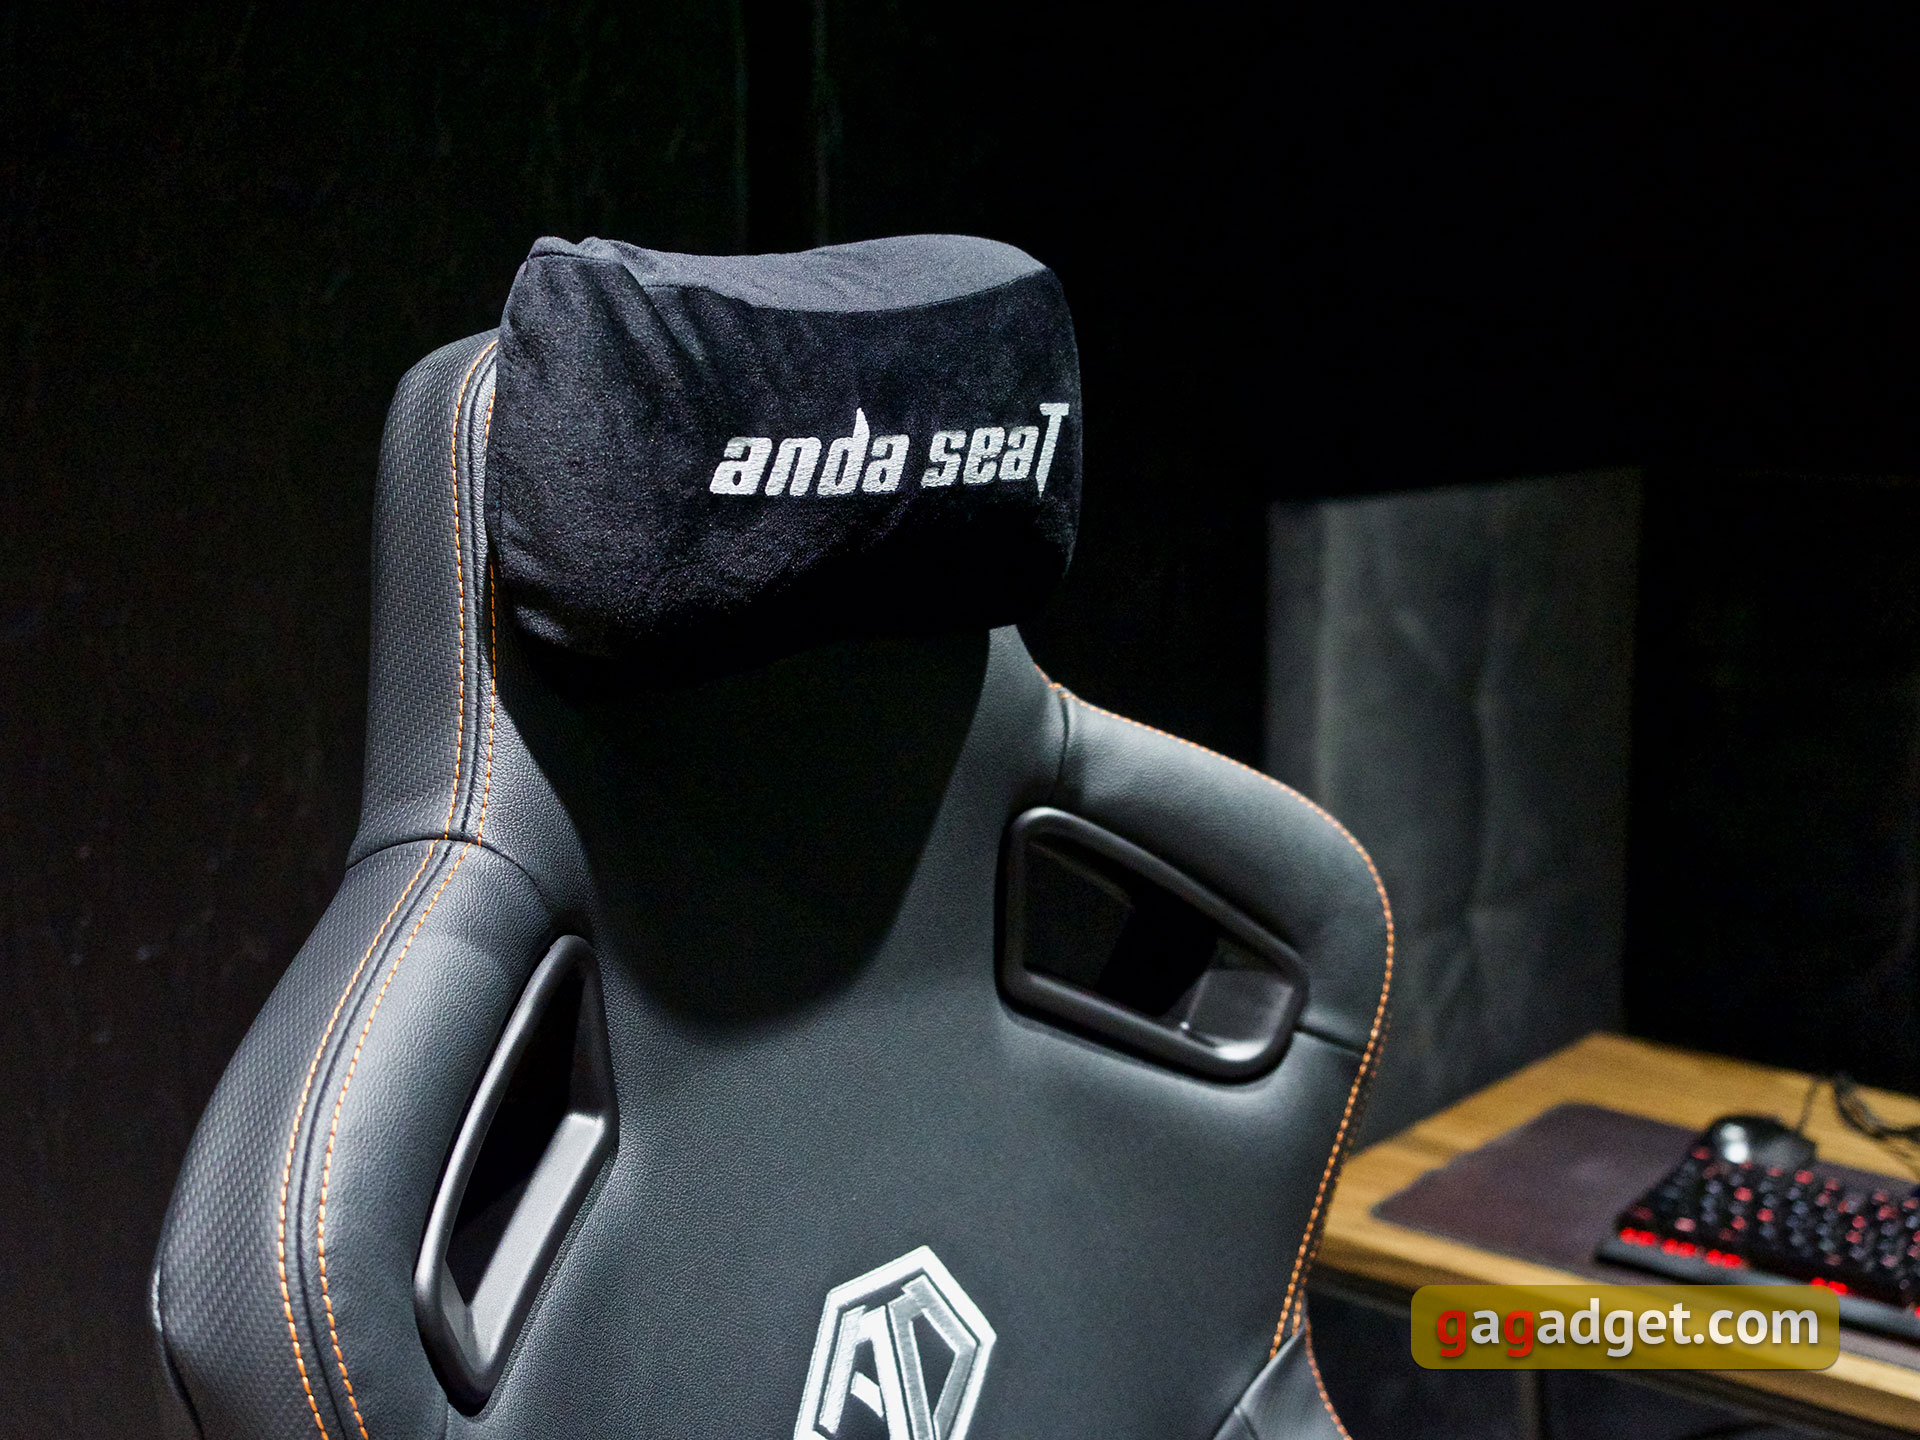 Trône pour le jeu : un examen du Anda Seat Kaiser 3 XL-48